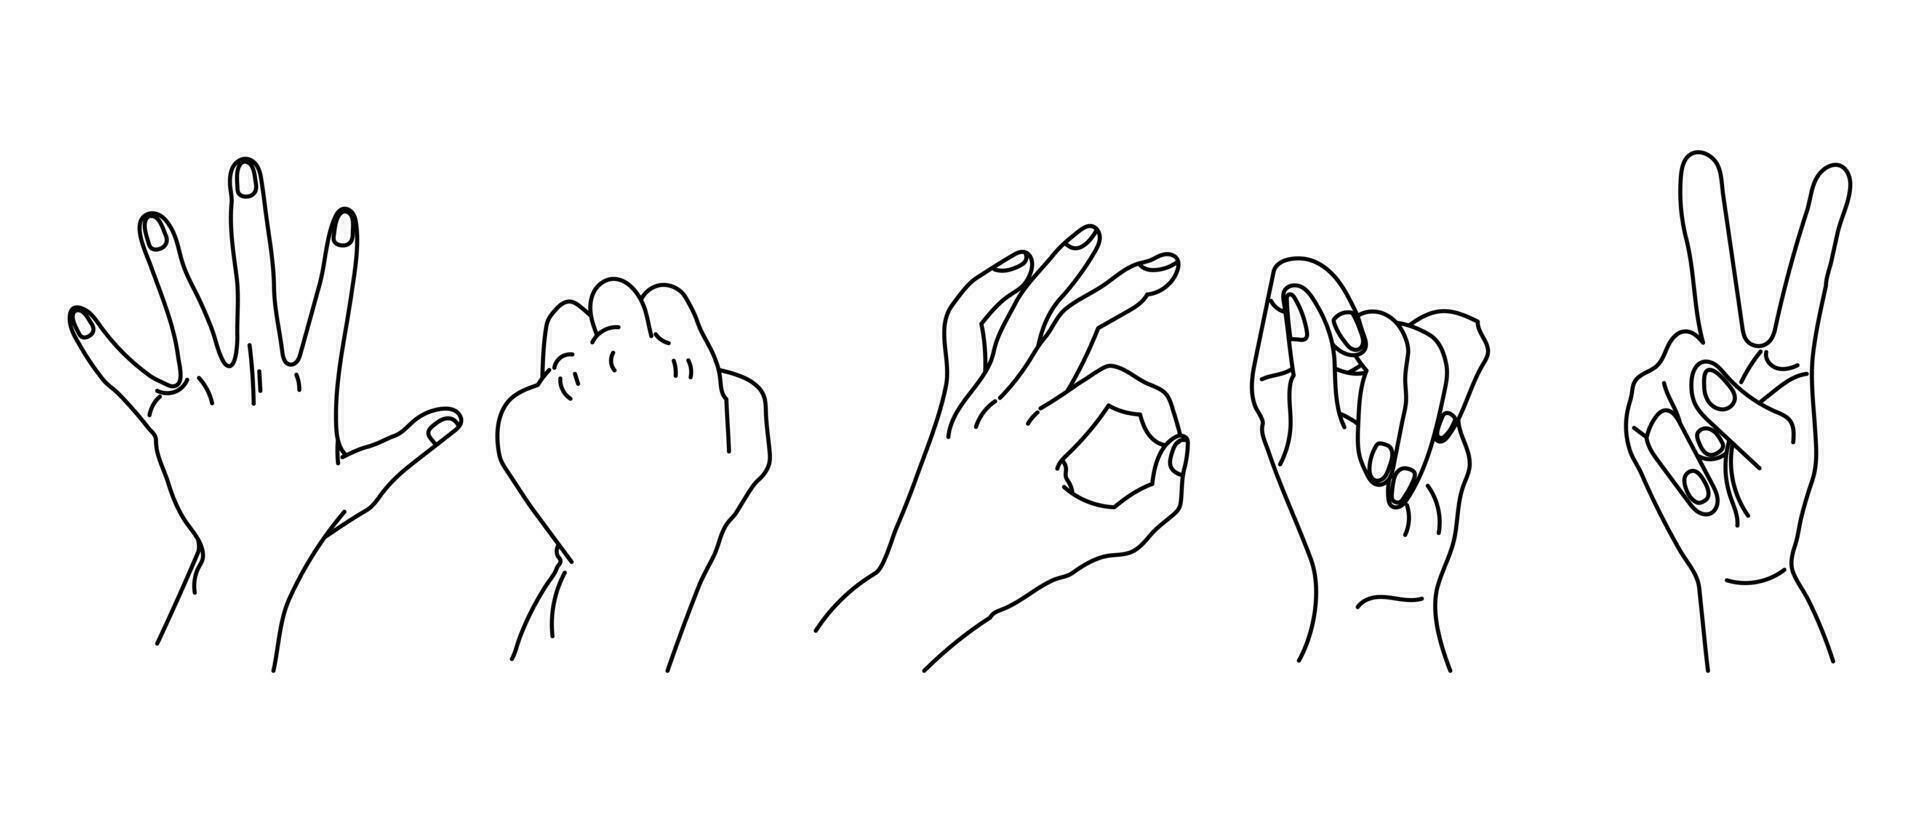 conjunto de contornos desenhados de mãos humanas. conjunto de mãos em uma coleção de vários gestos, ilustração vetorial no estilo de um esboço linear simples vetor